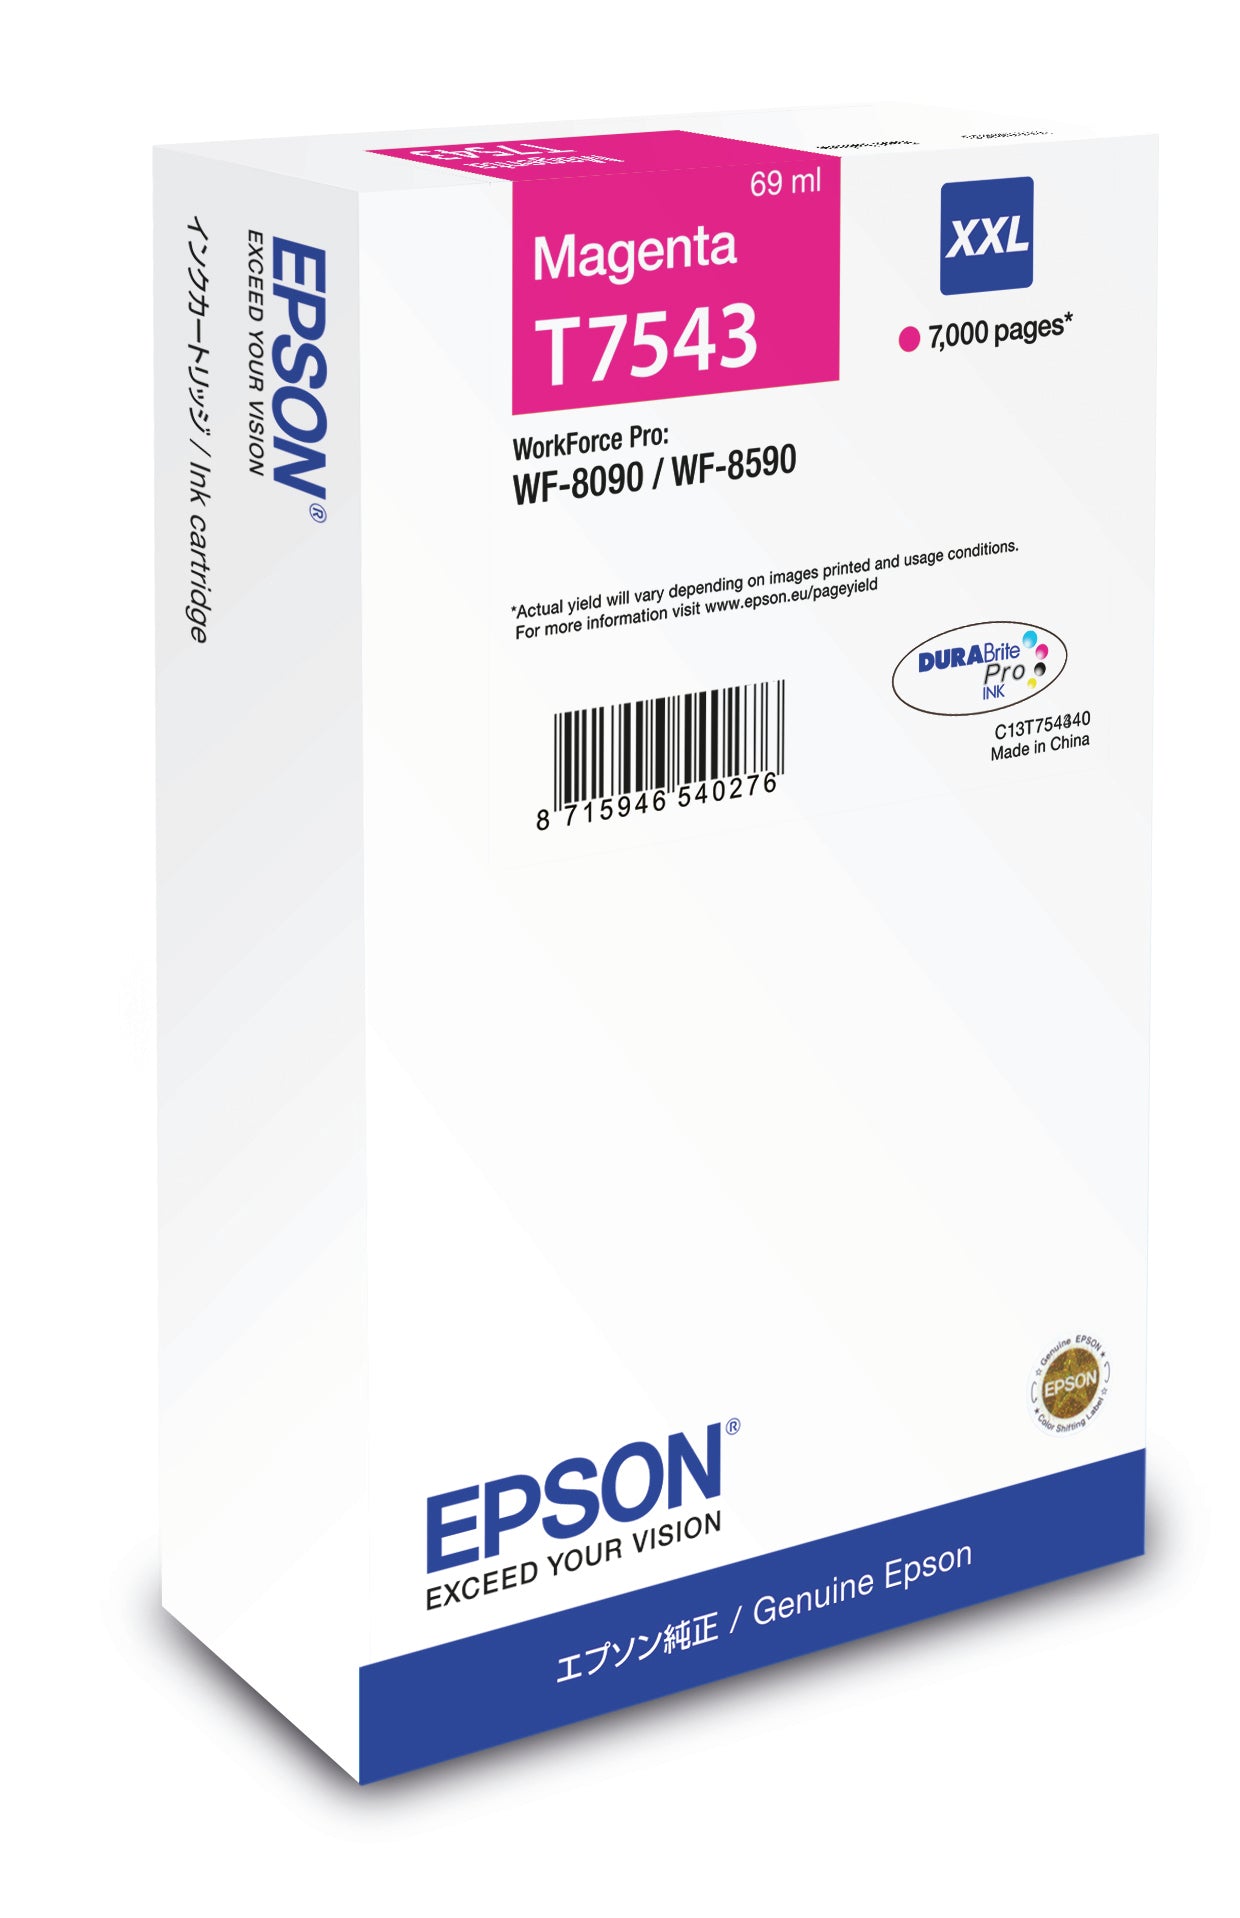 Epson WF-8090/WF-8590 Ink Cartridge XXL Magenta